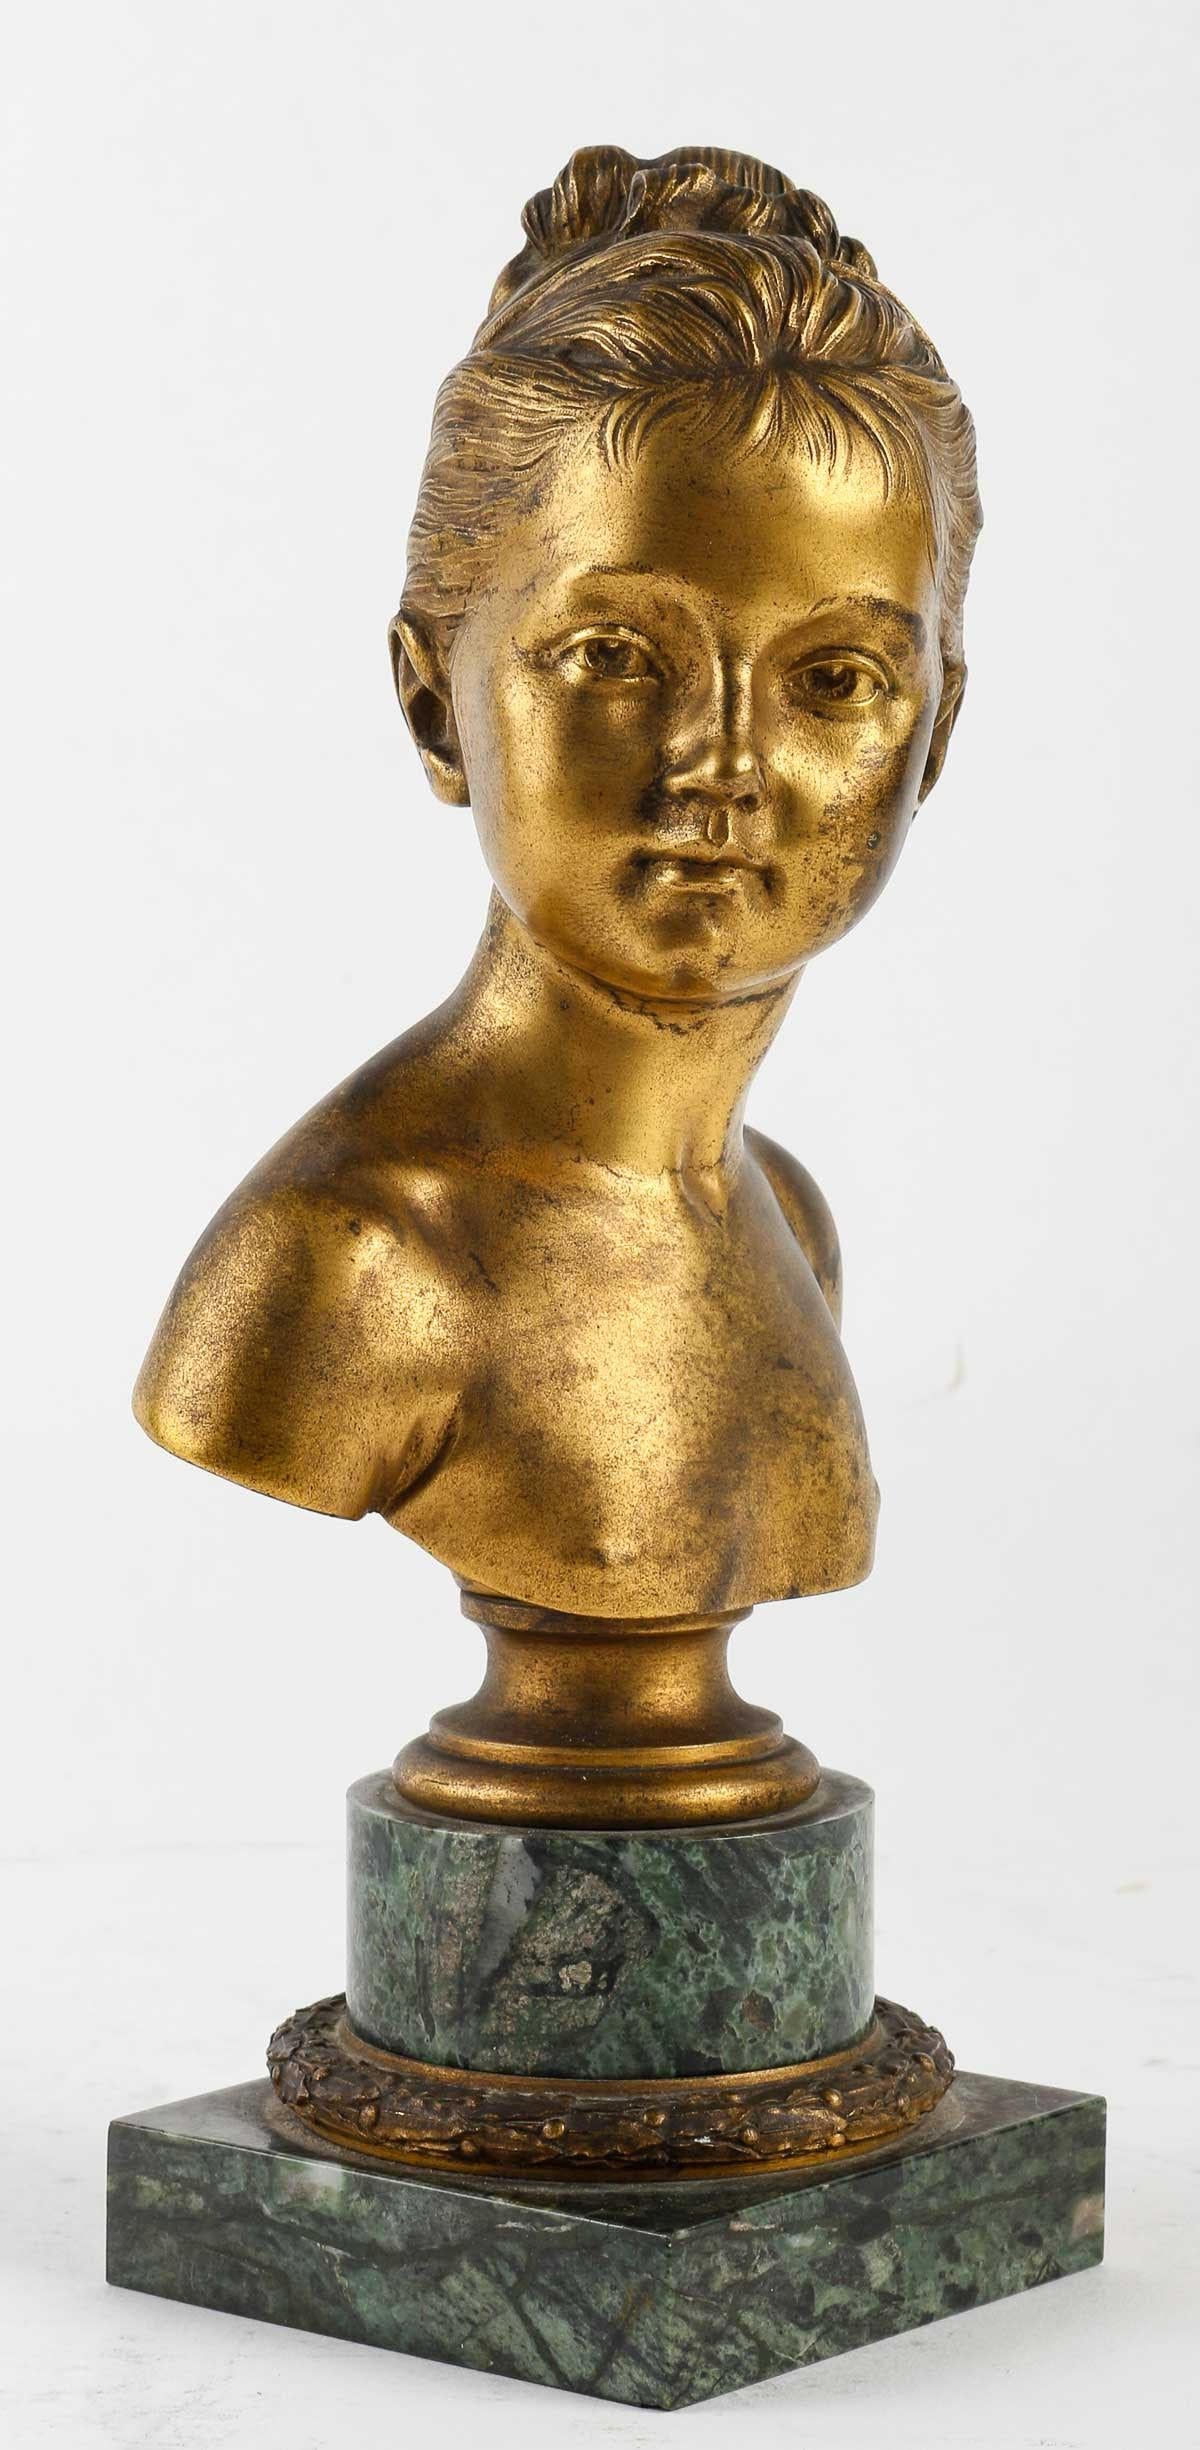 Buste en bronze doré de Louise Brongniart par Houdon.

Sculpture d'un buste de Louise Brongniart par Jean-Antoine Houdon (1741-1828), reproduction du XIXe siècle.    
h : 23cm , w : 11cm, d : 8cm